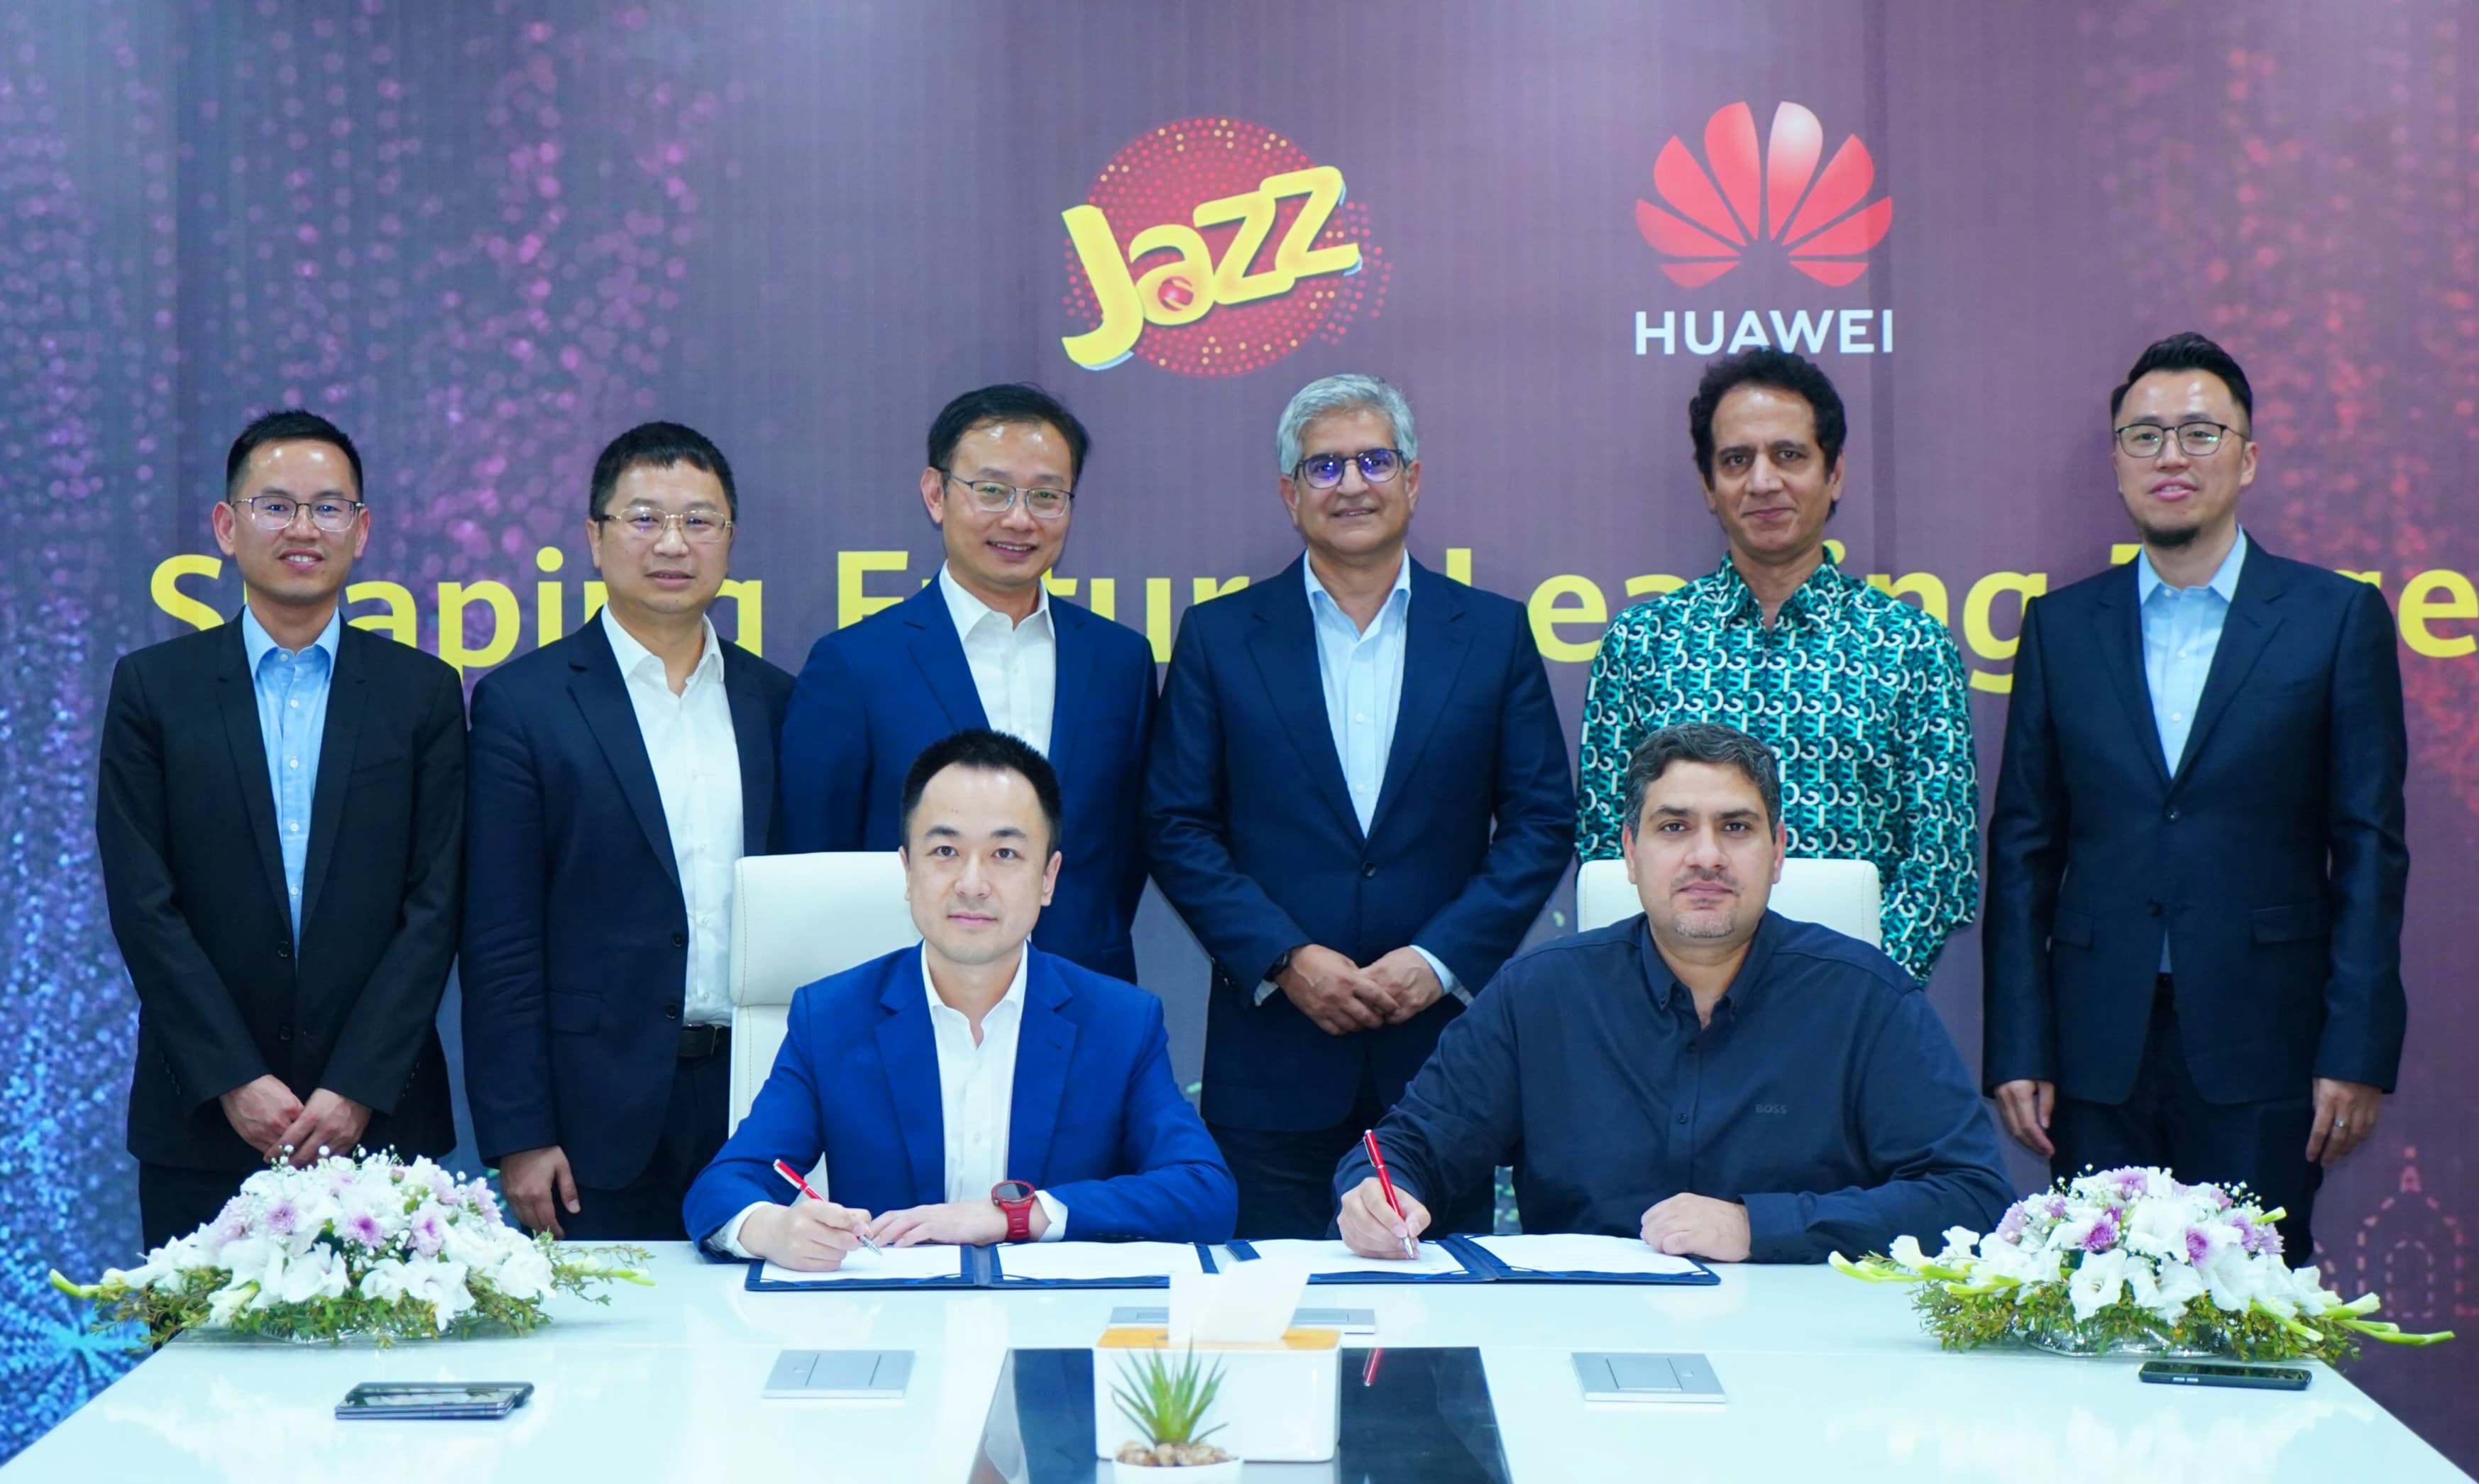 WISDOM فریم ورک کے ذریعے نیٹ ورک ڈیجیٹائزیشن کو تیز کرنے کے لیے Jazz Huawei پاکستان کے ساتھ شراکت دار